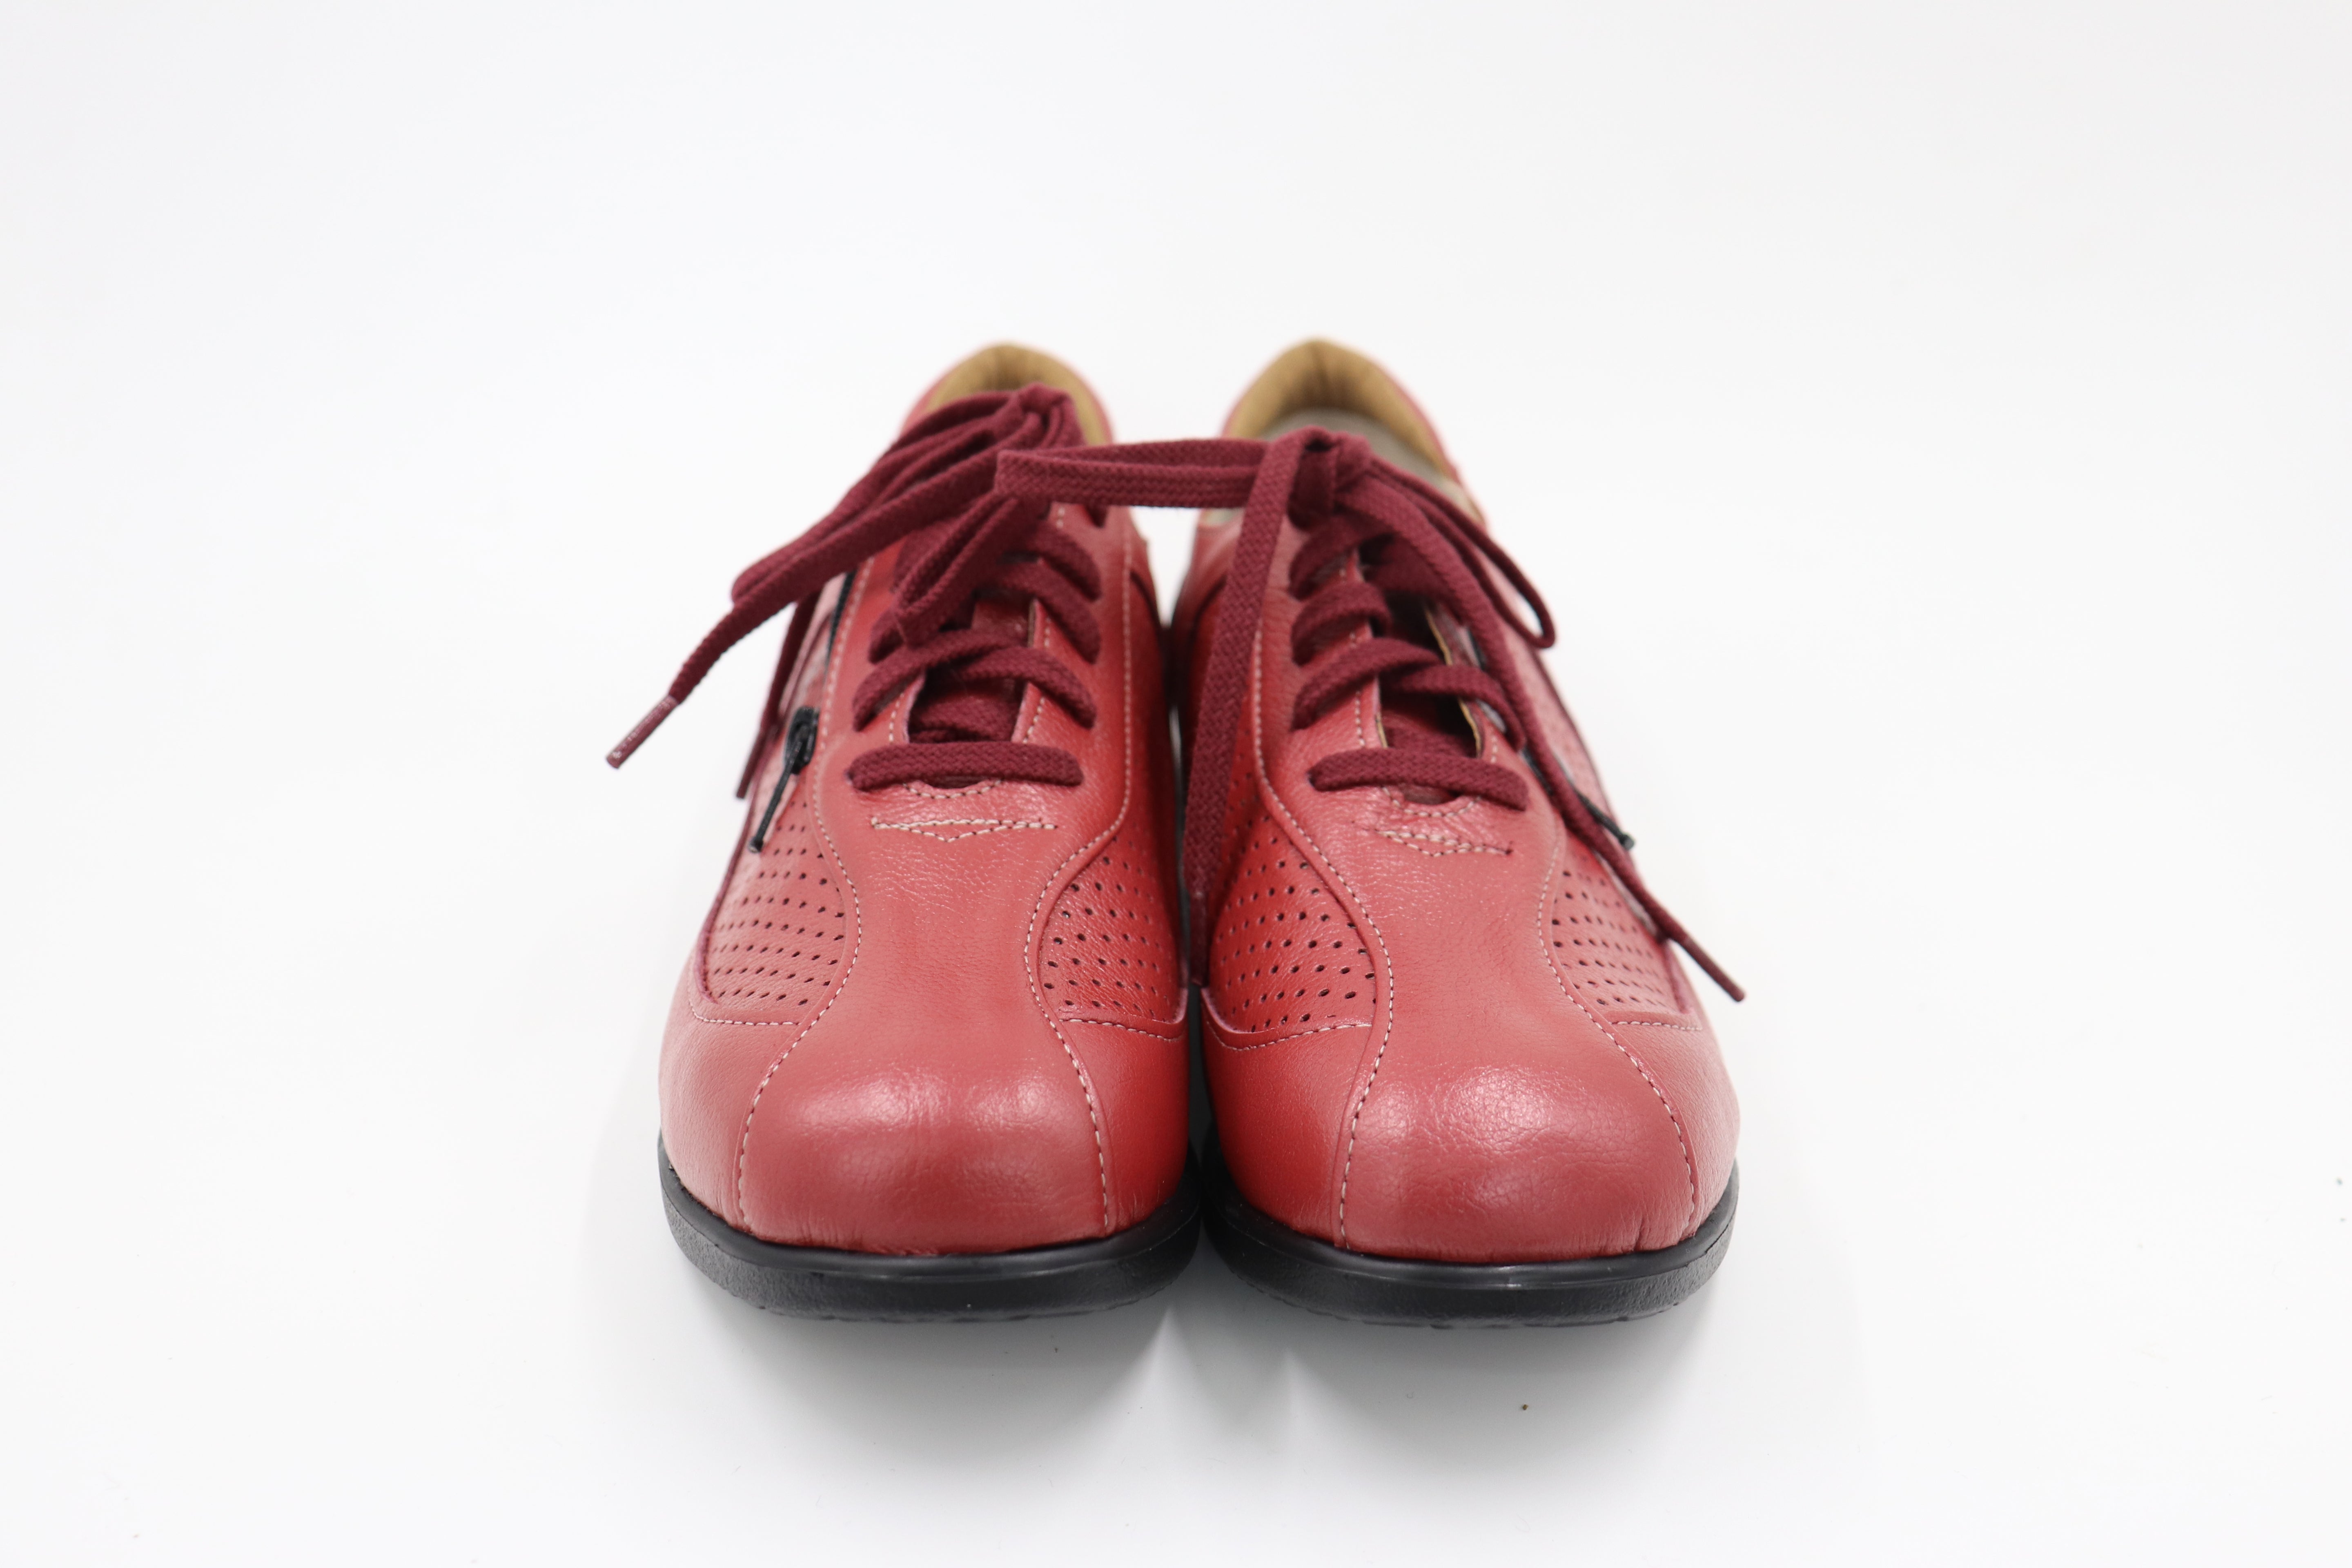 ウォーキングシューズ コンフォート  カジュアル レディース 靴  紐靴  4E 日本製 本革 内ファスナー 脱ぎ履きしやすい クッション性 お出かけ パンチング 軽量シューズ No.1518